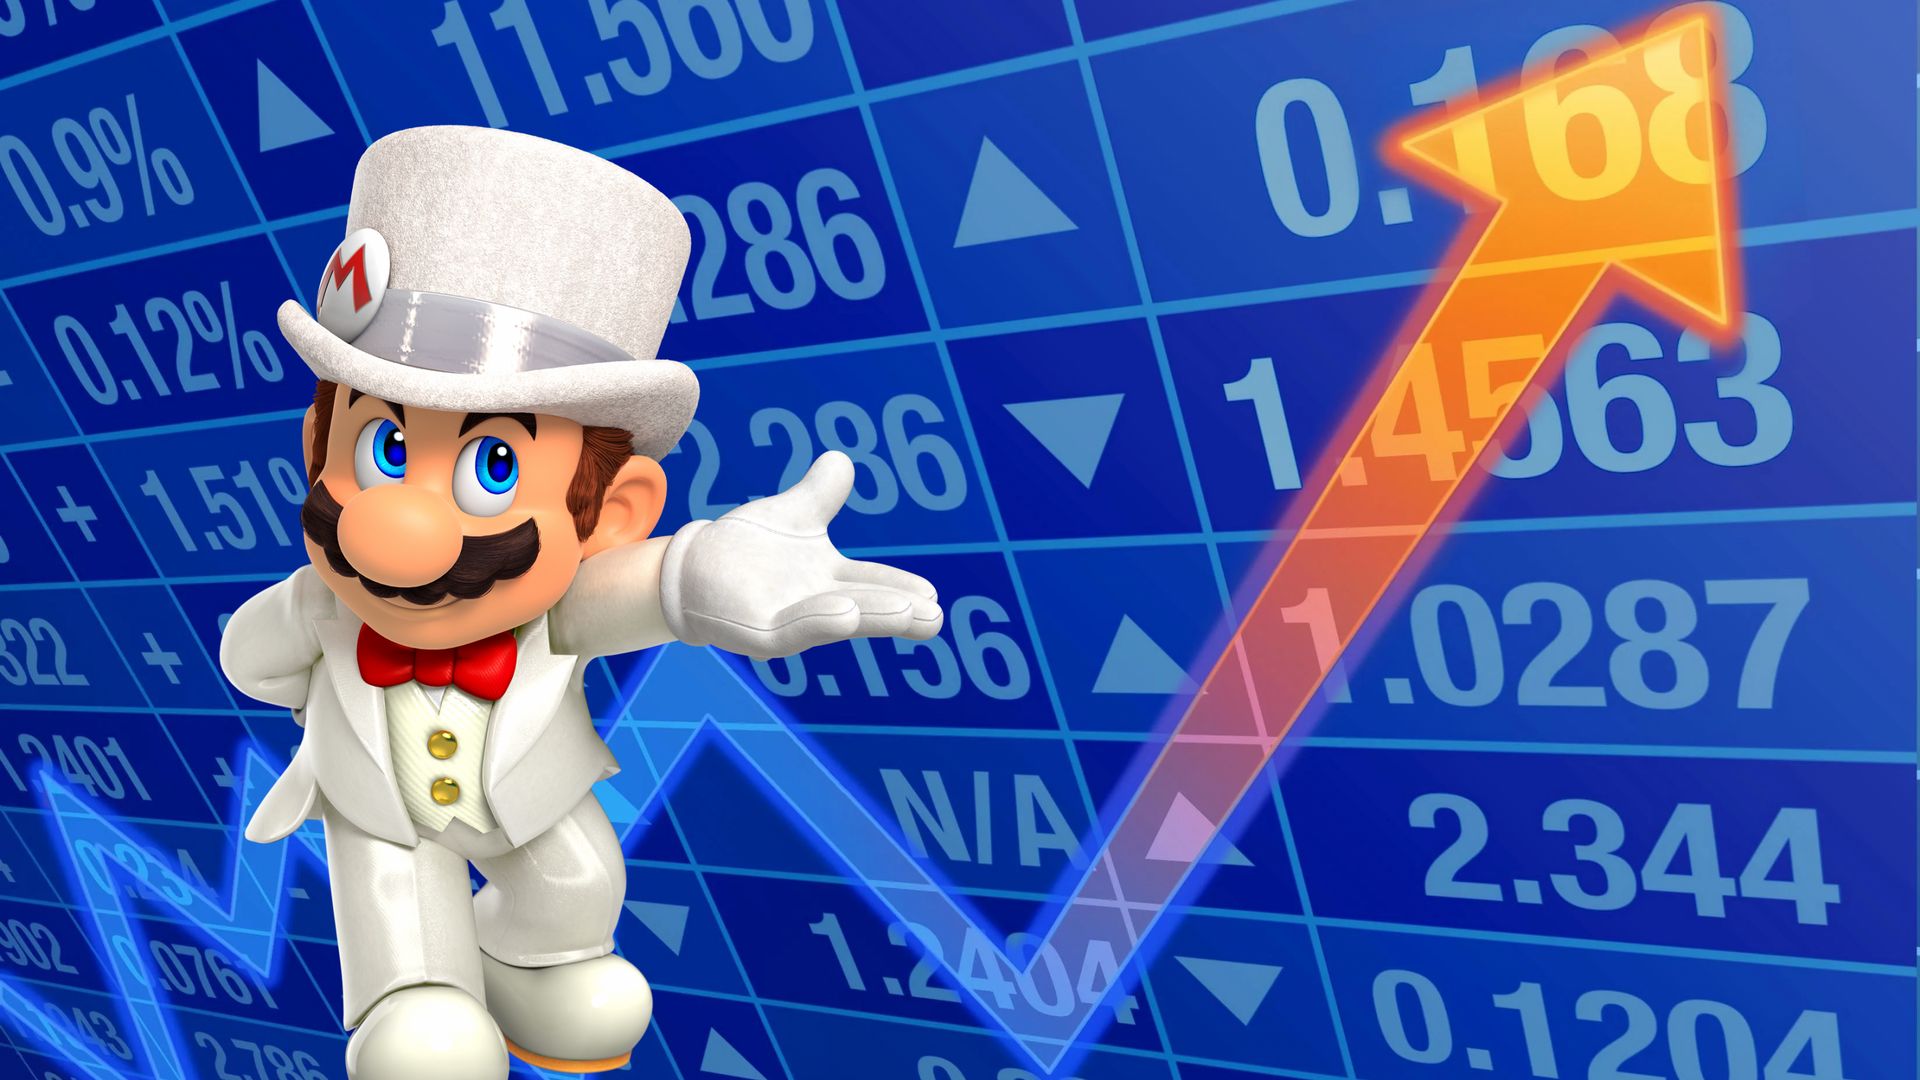 Nintendo a annoncé revoir ses bénéfices annuels à la hausse grâce au cours du yen au plus bas.